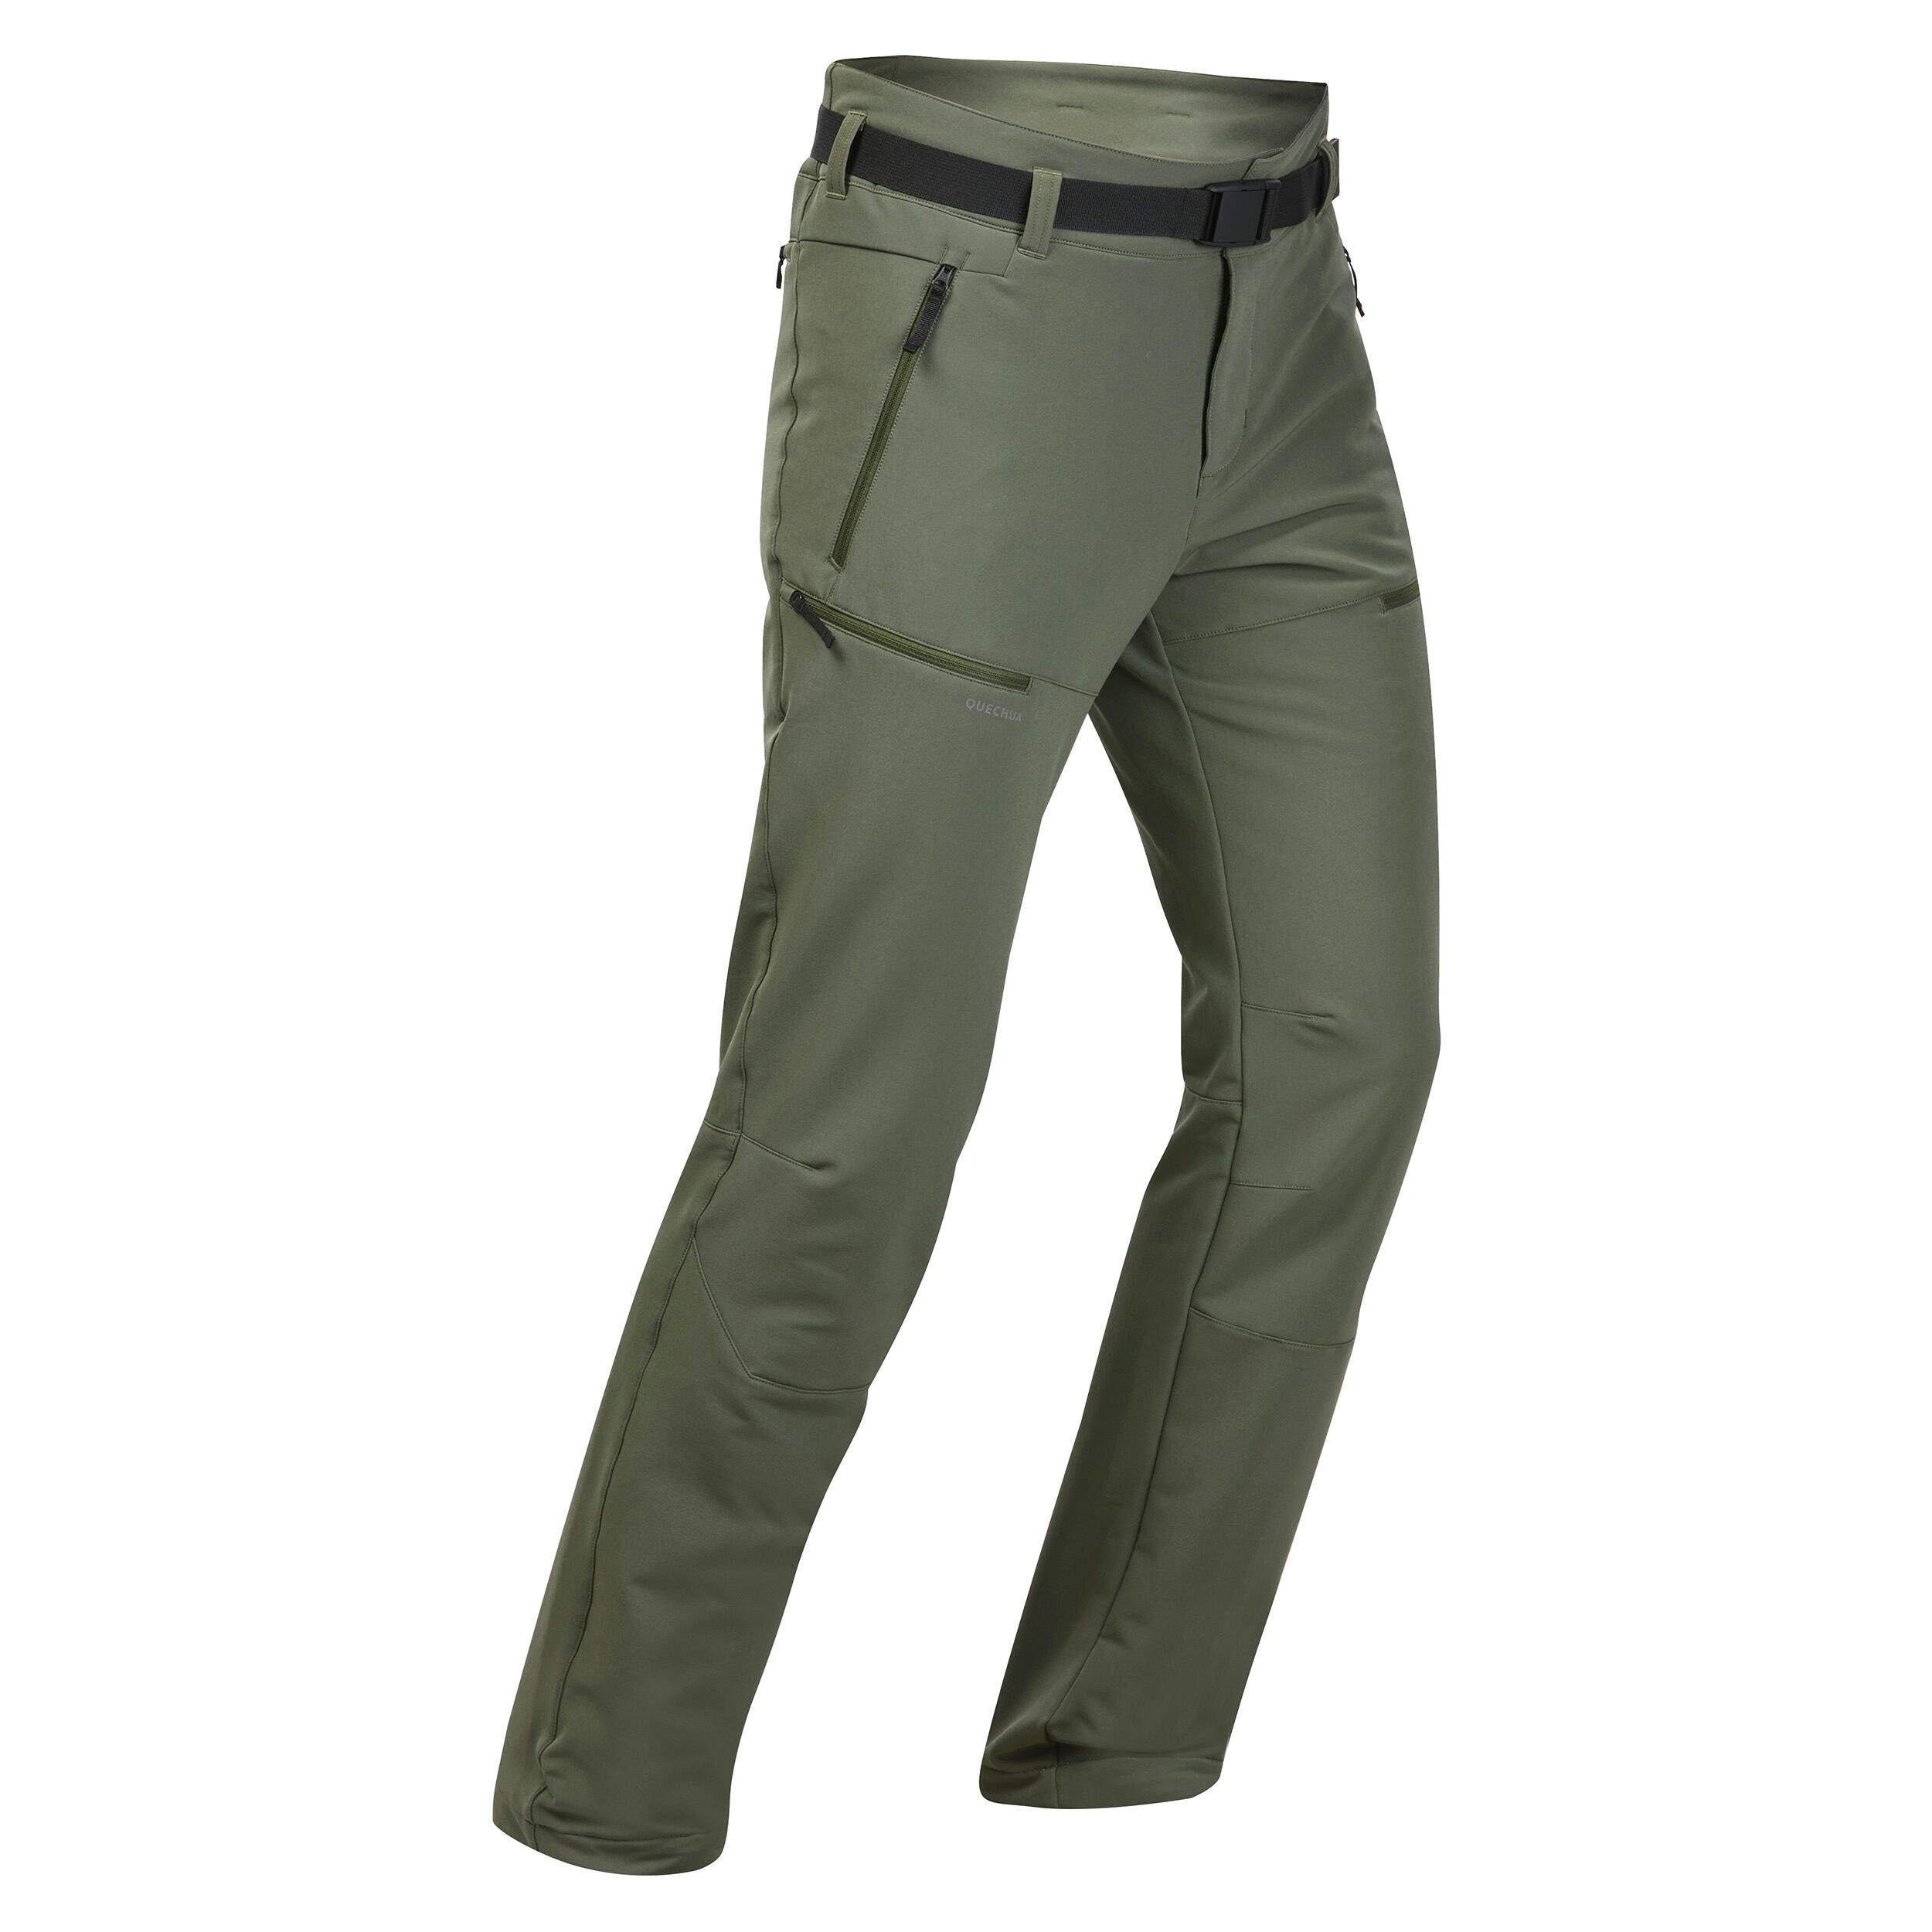 Men’s Warm Pants - SH 500 Green - Olive green - Quechua - Decathlon